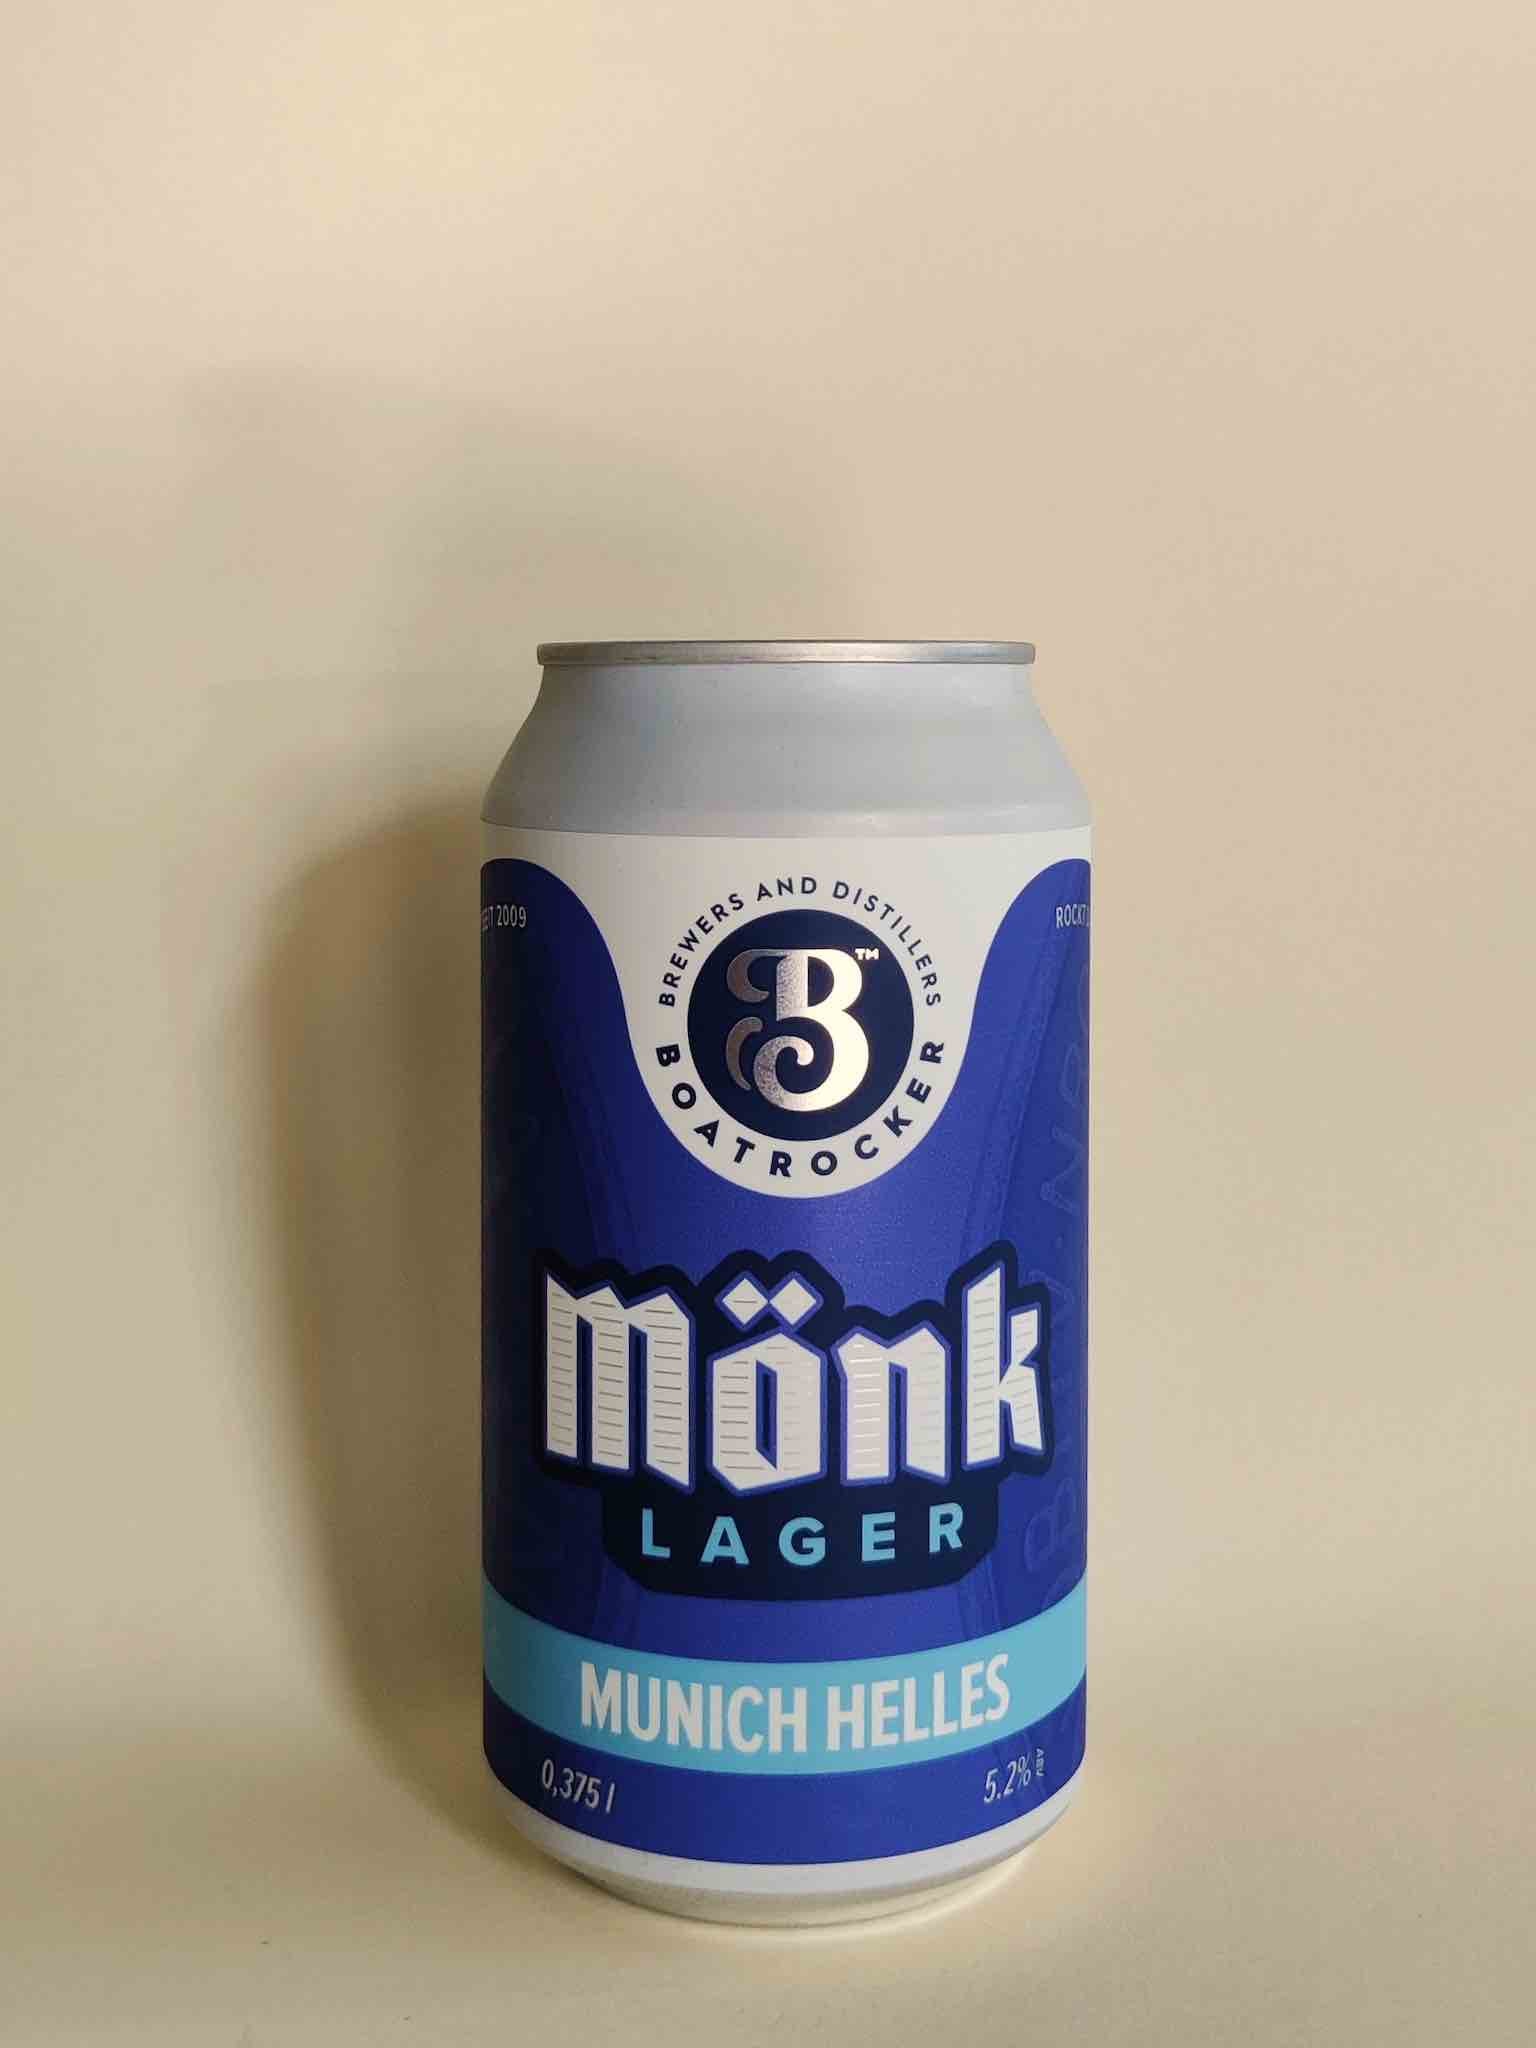 A 375ml can of Boatrocker Monk Lager.